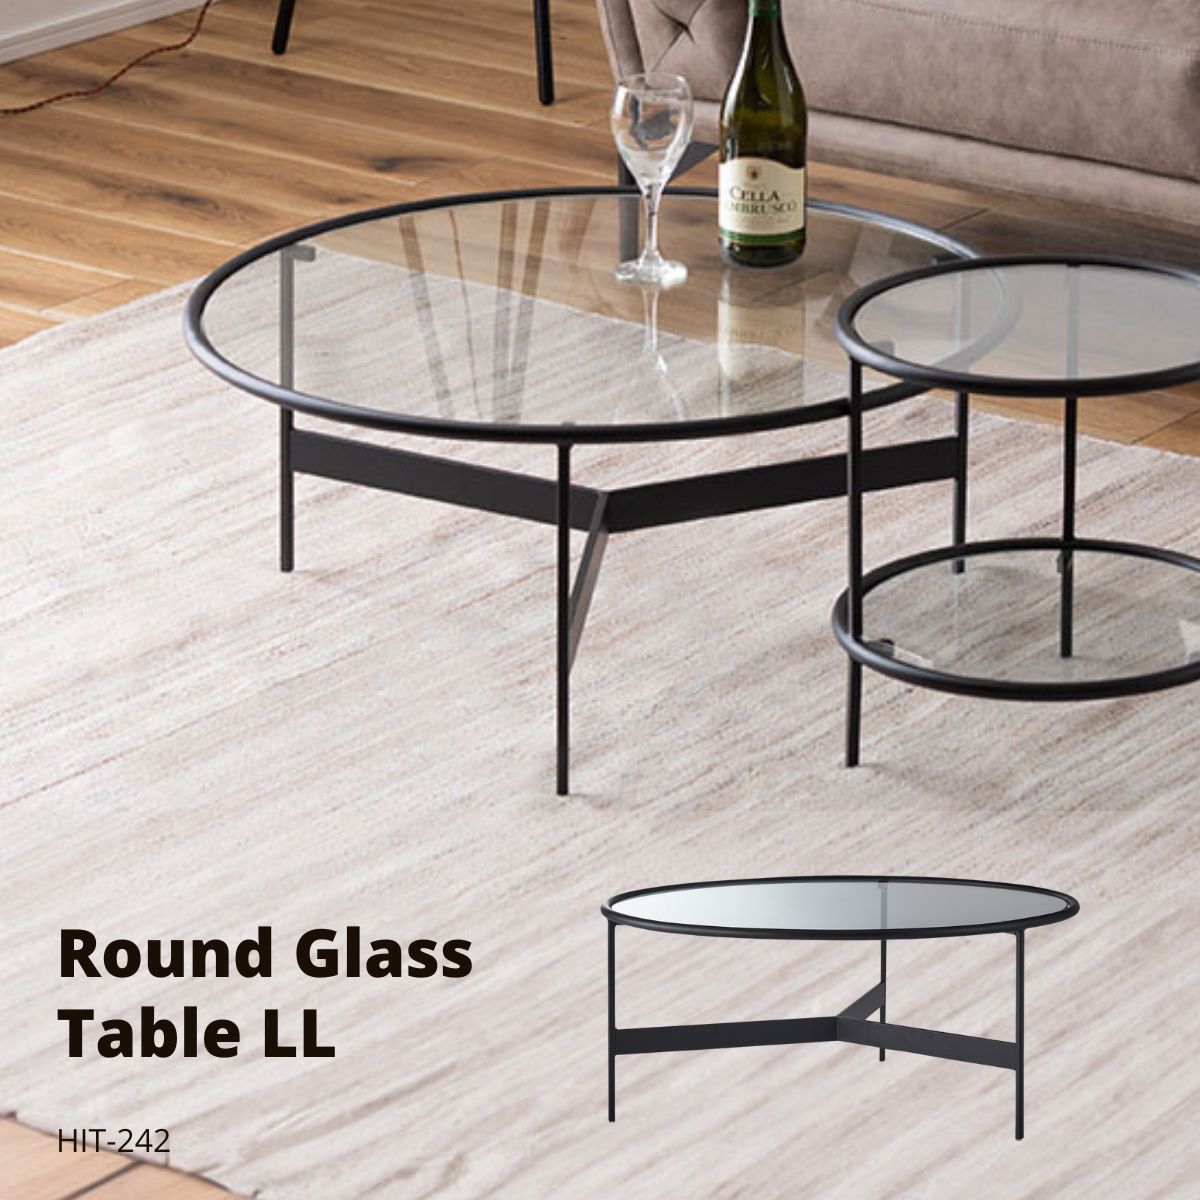 特長●シンプルでスタイリッシュなガラステーブル●マットなブラックアイアンの滑らかな曲線とハードなガラスを組み合わせたテーブルに新サイズが登場しました。リビングテーブル/サイドテーブルとして使用したり、2台並べてネストテーブルとしても使用でき...